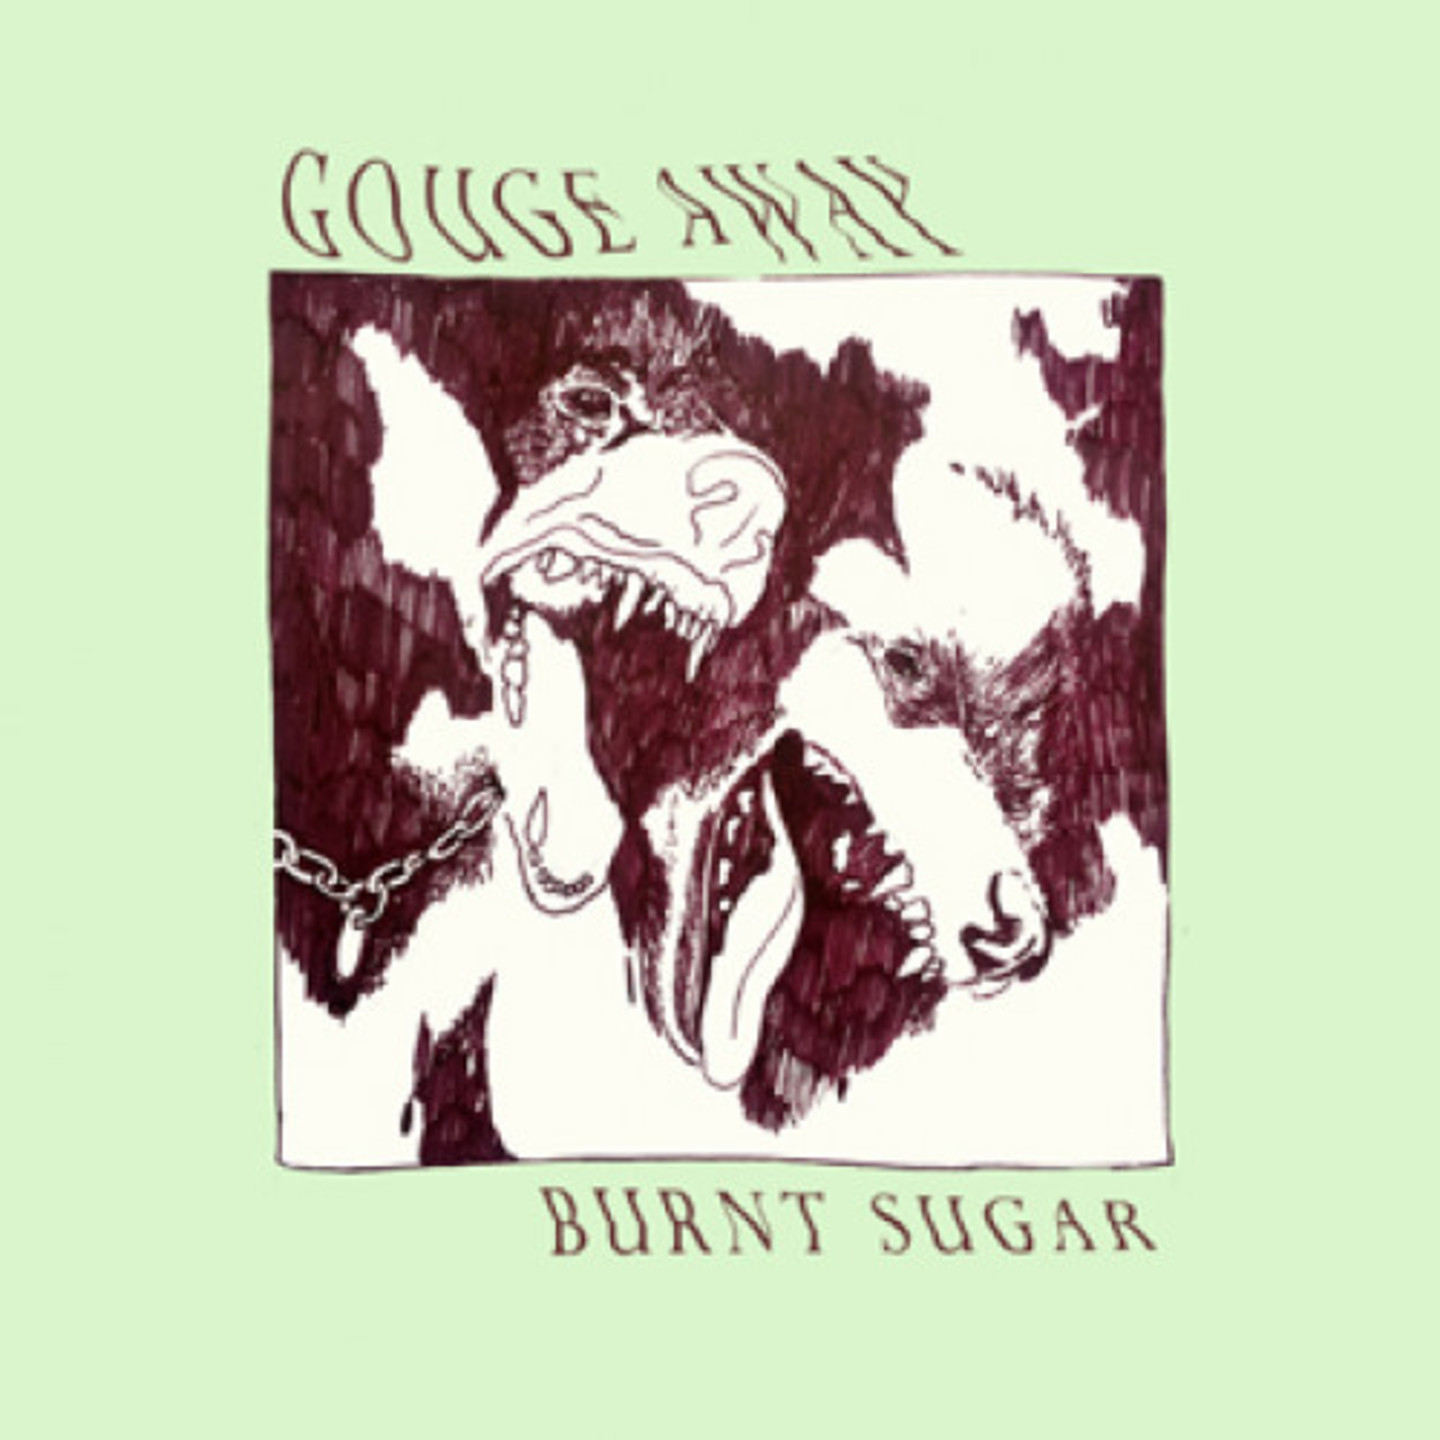 GOUGE AWAY - Burnt Sugar LP